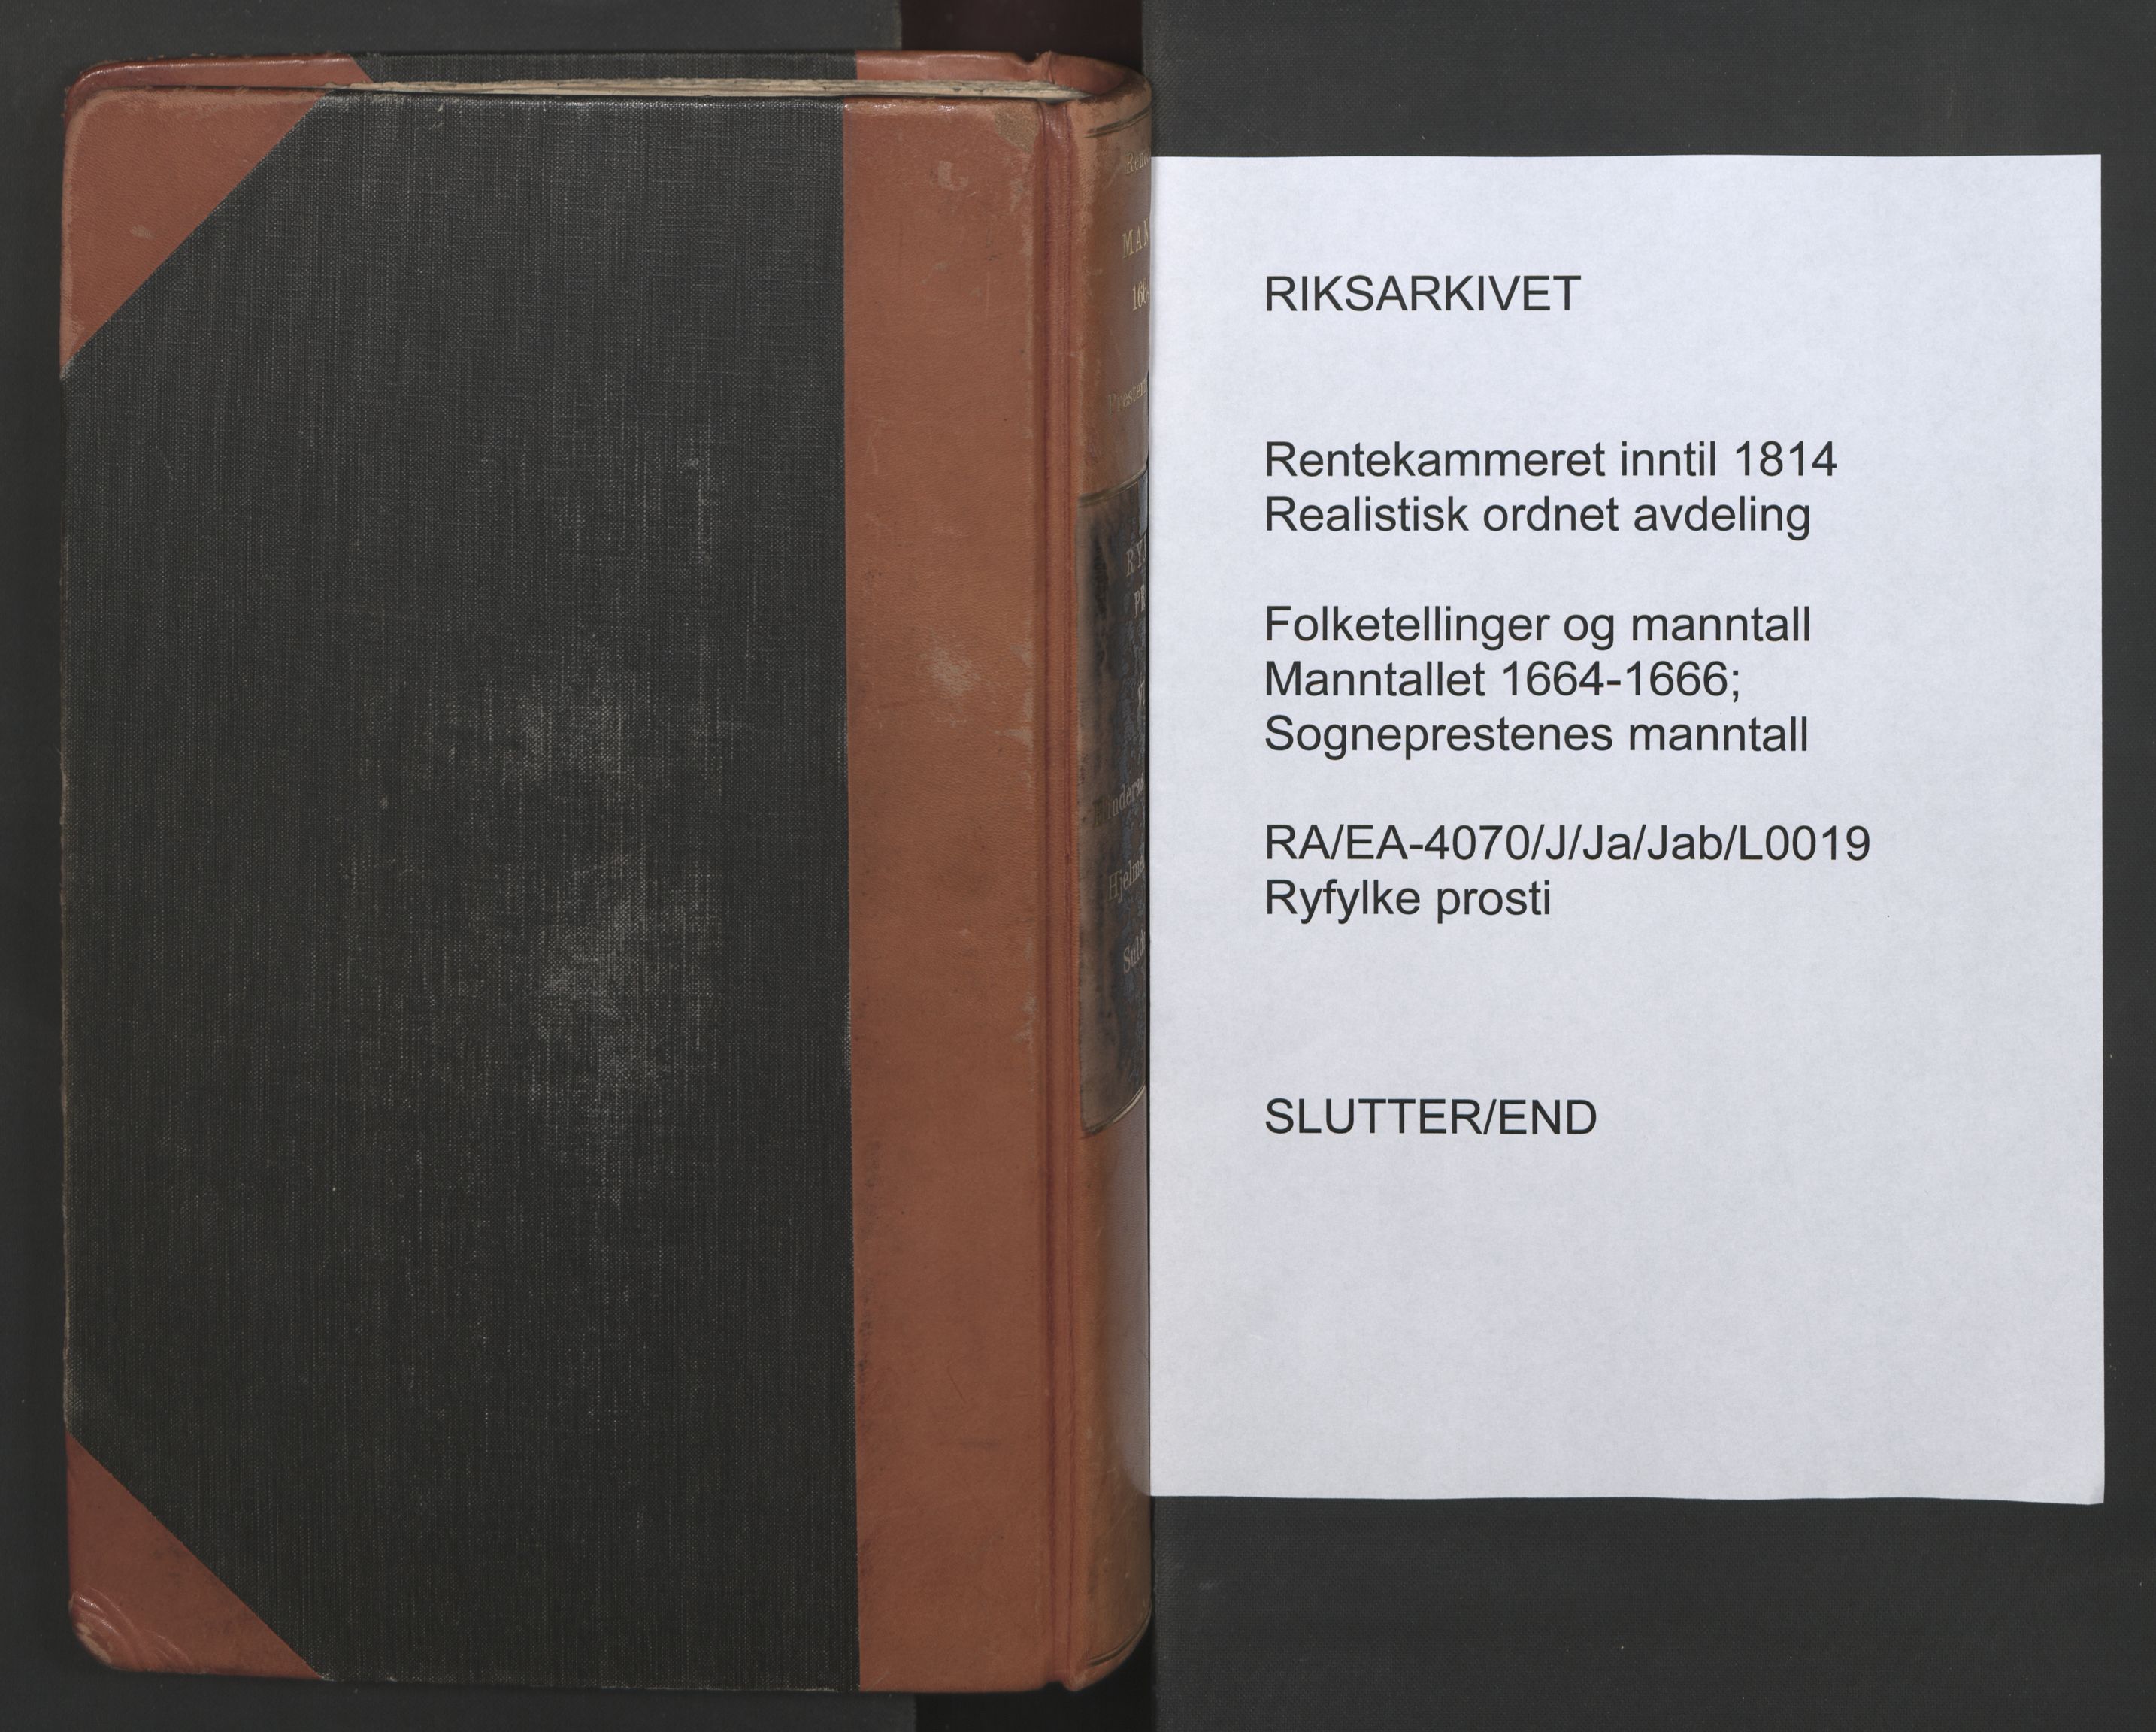 RA, Sogneprestenes manntall 1664-1666, nr. 19: Ryfylke prosti, 1664-1666